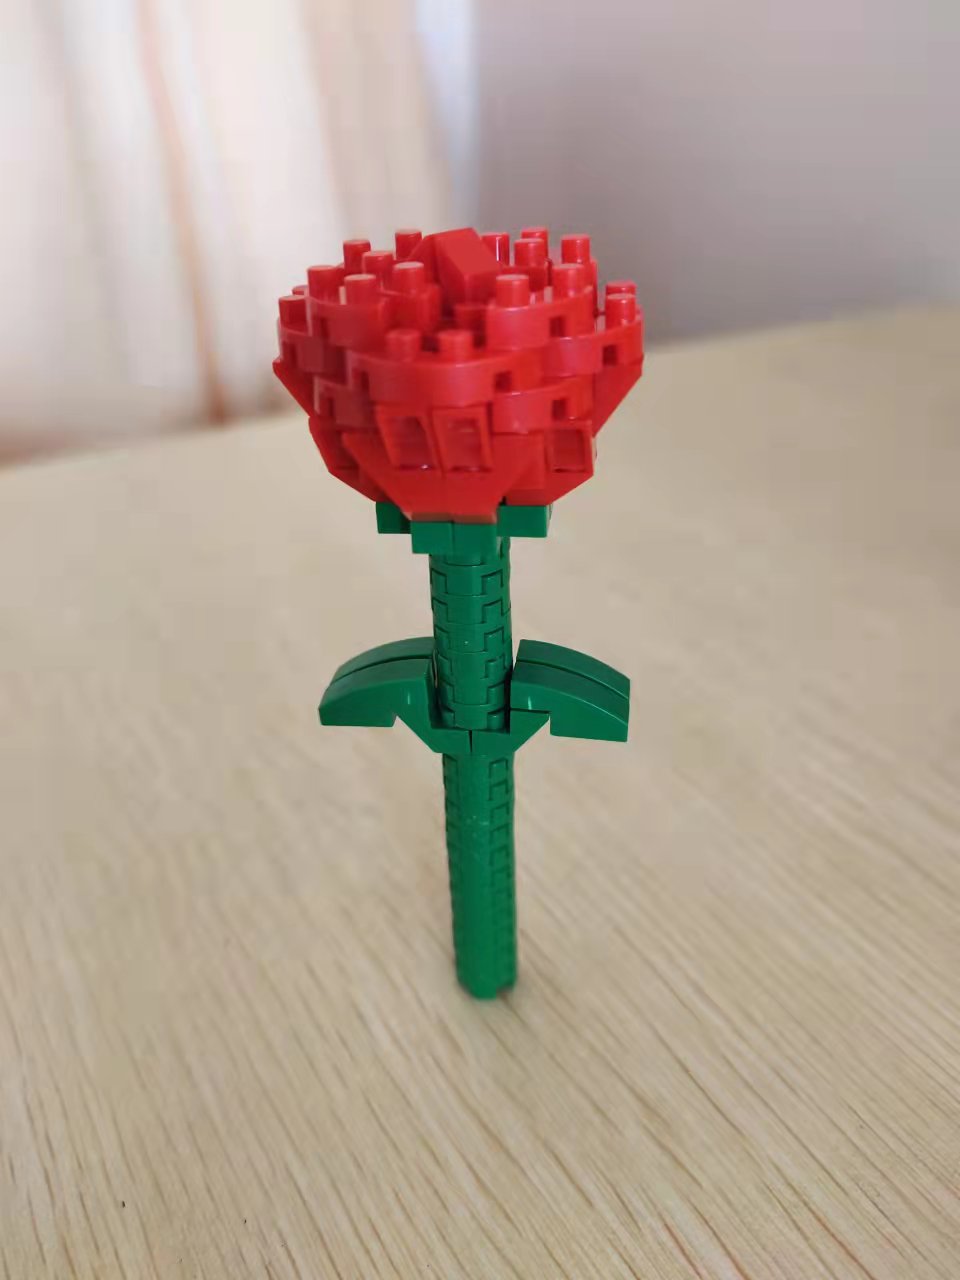 智楠收到的第一份礼物是一朵“永不凋谢”的玫瑰花.jpg